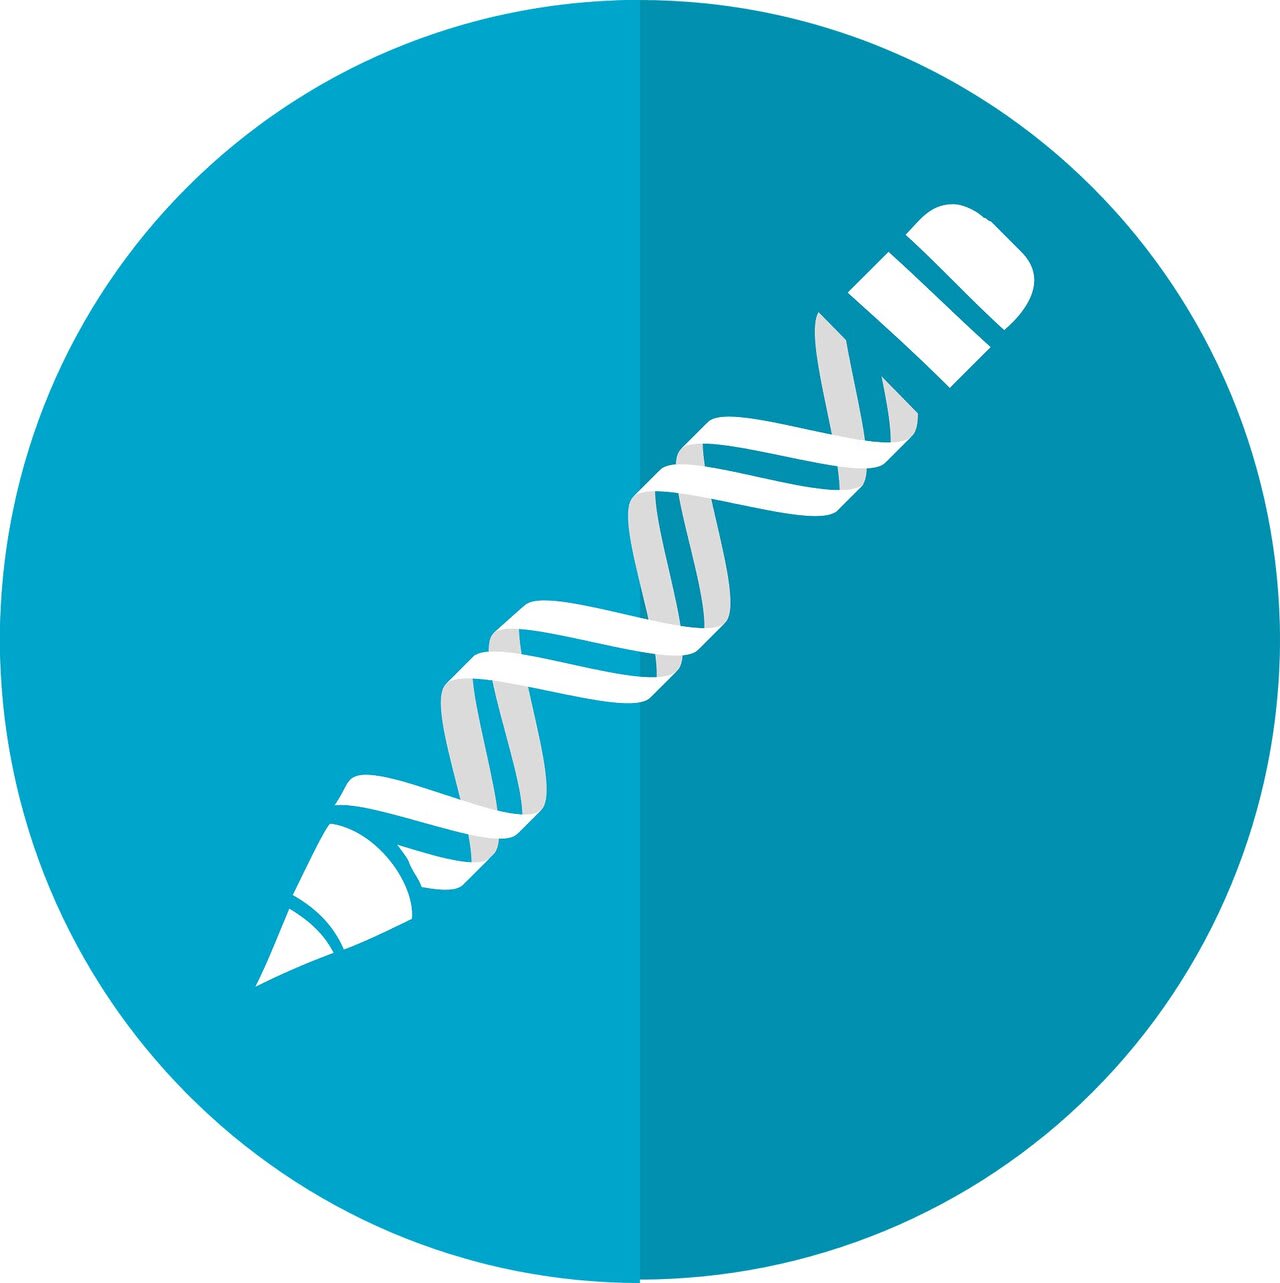 Improved CRISPR gene drive solves problems of old tech